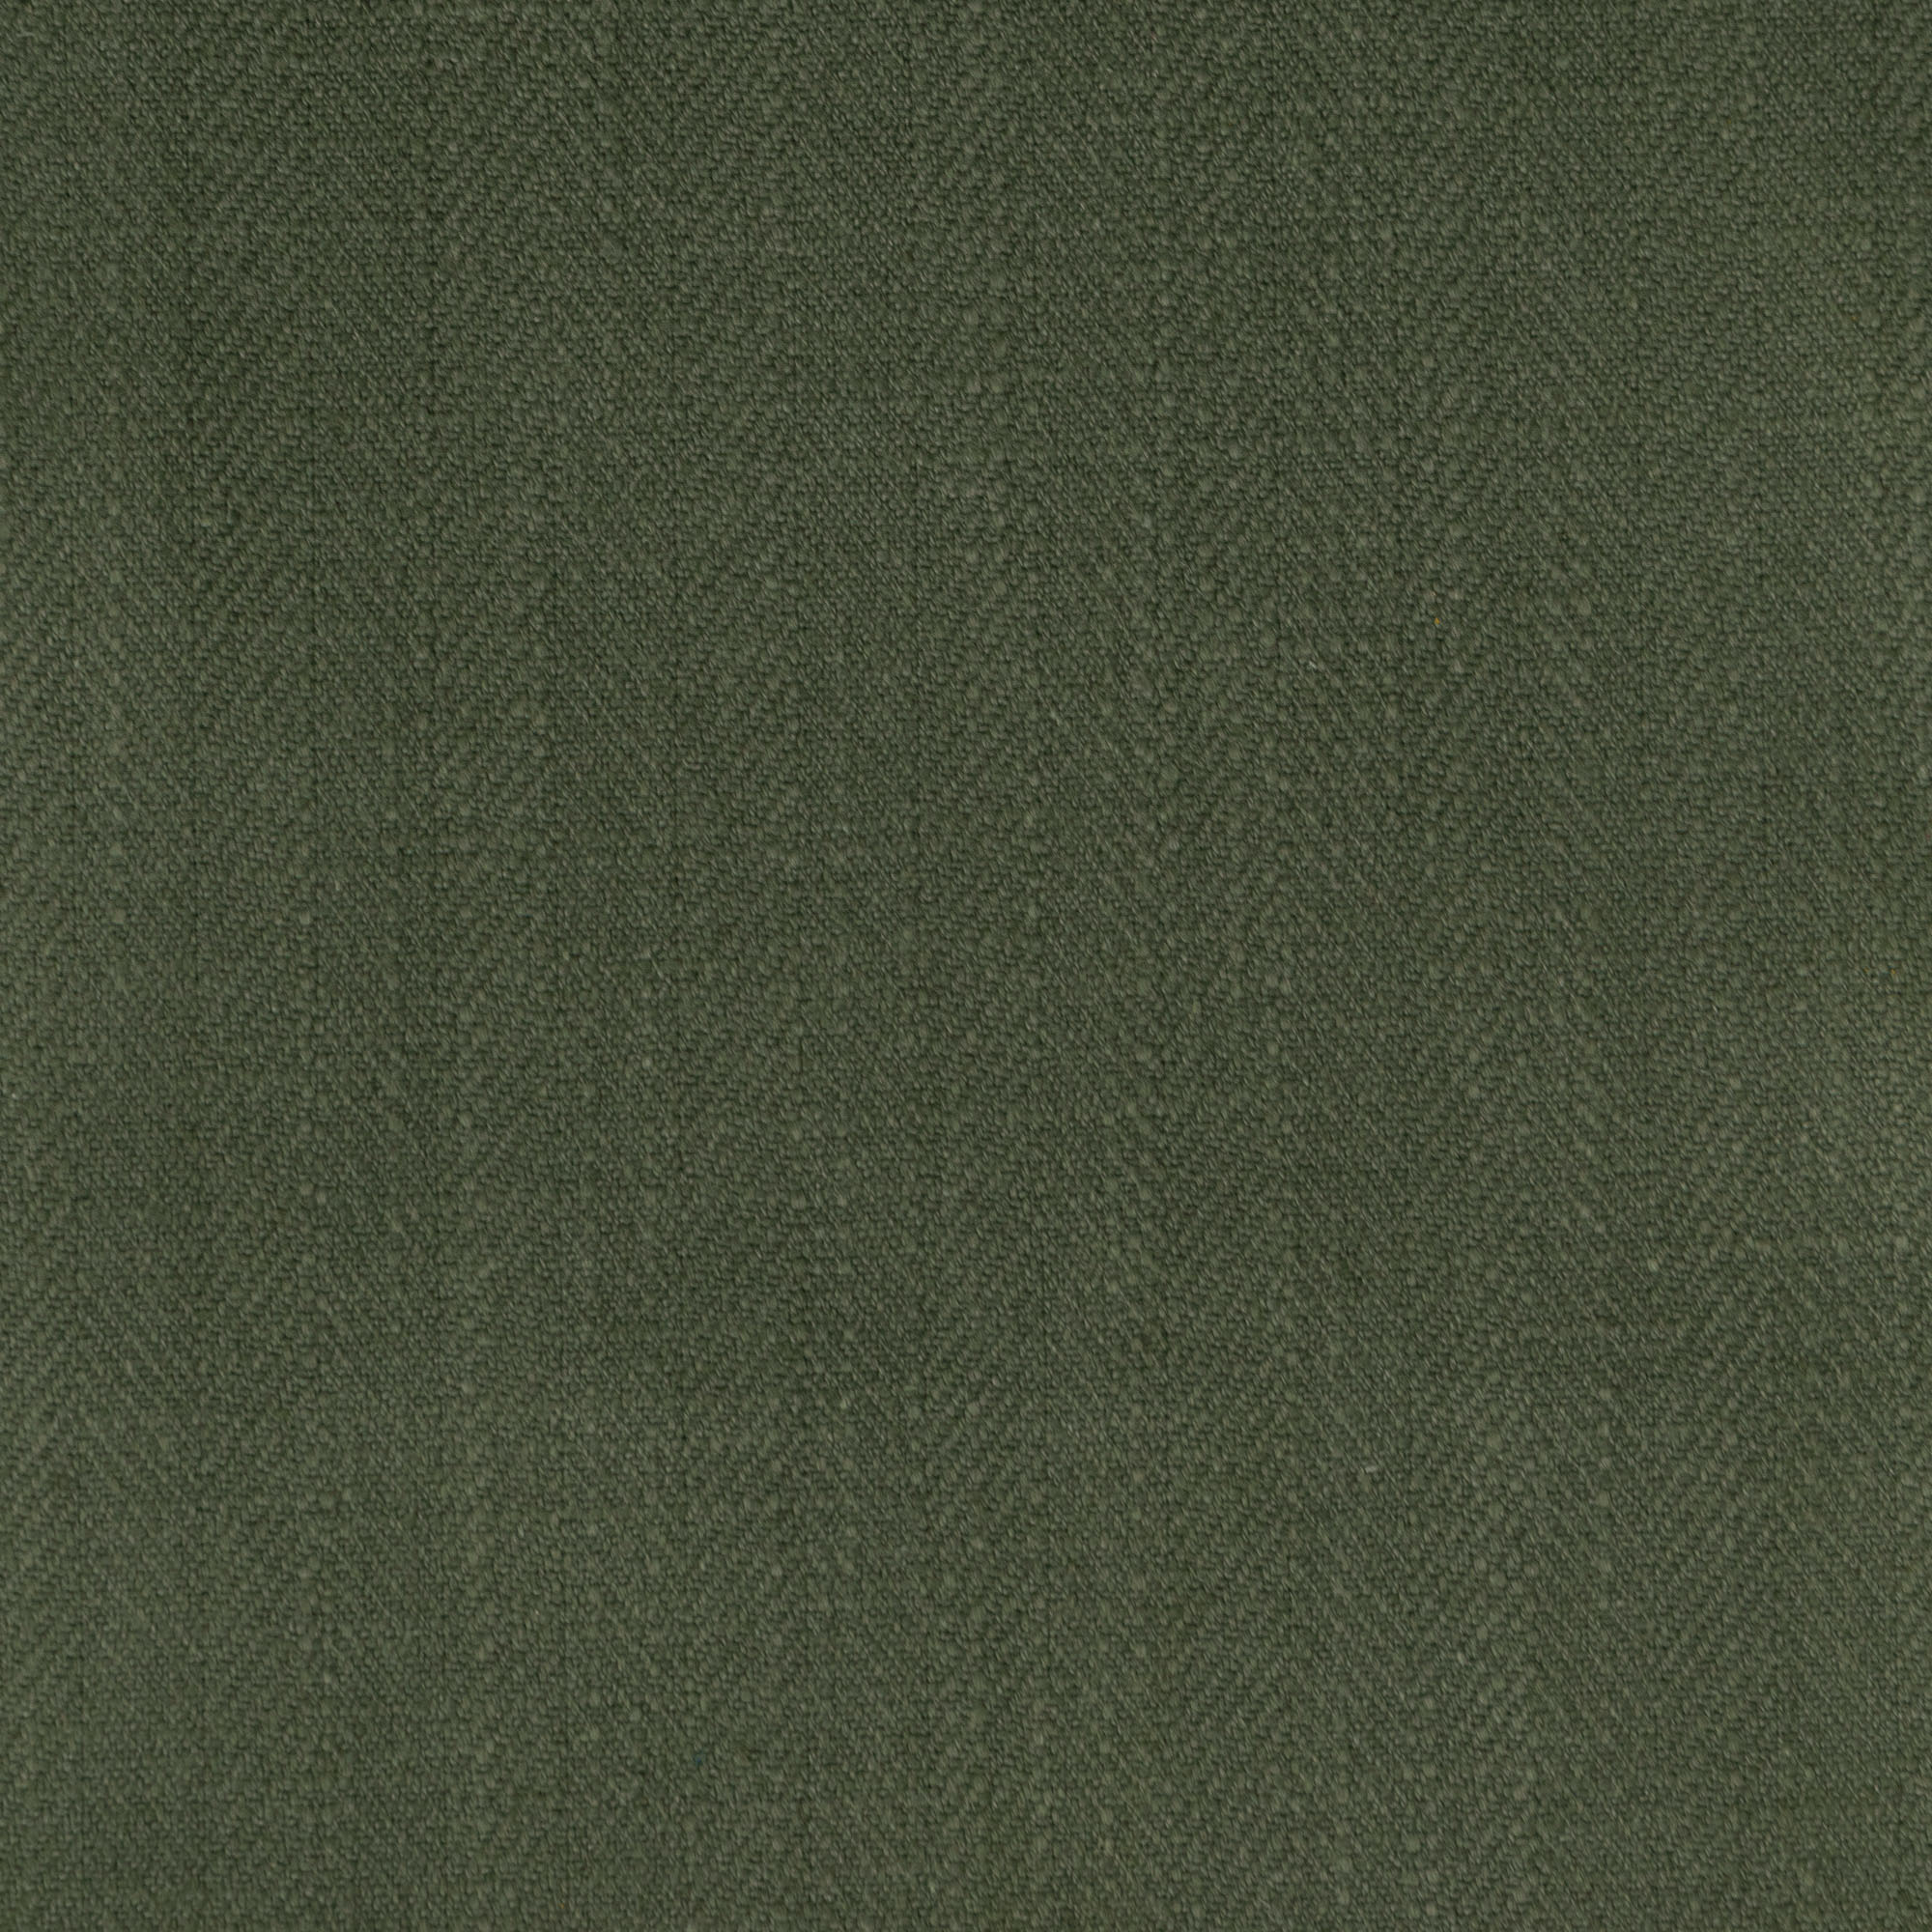 Gir Forest Night Cotton Linen Blend Fabric Swatch 15cm x 15cm